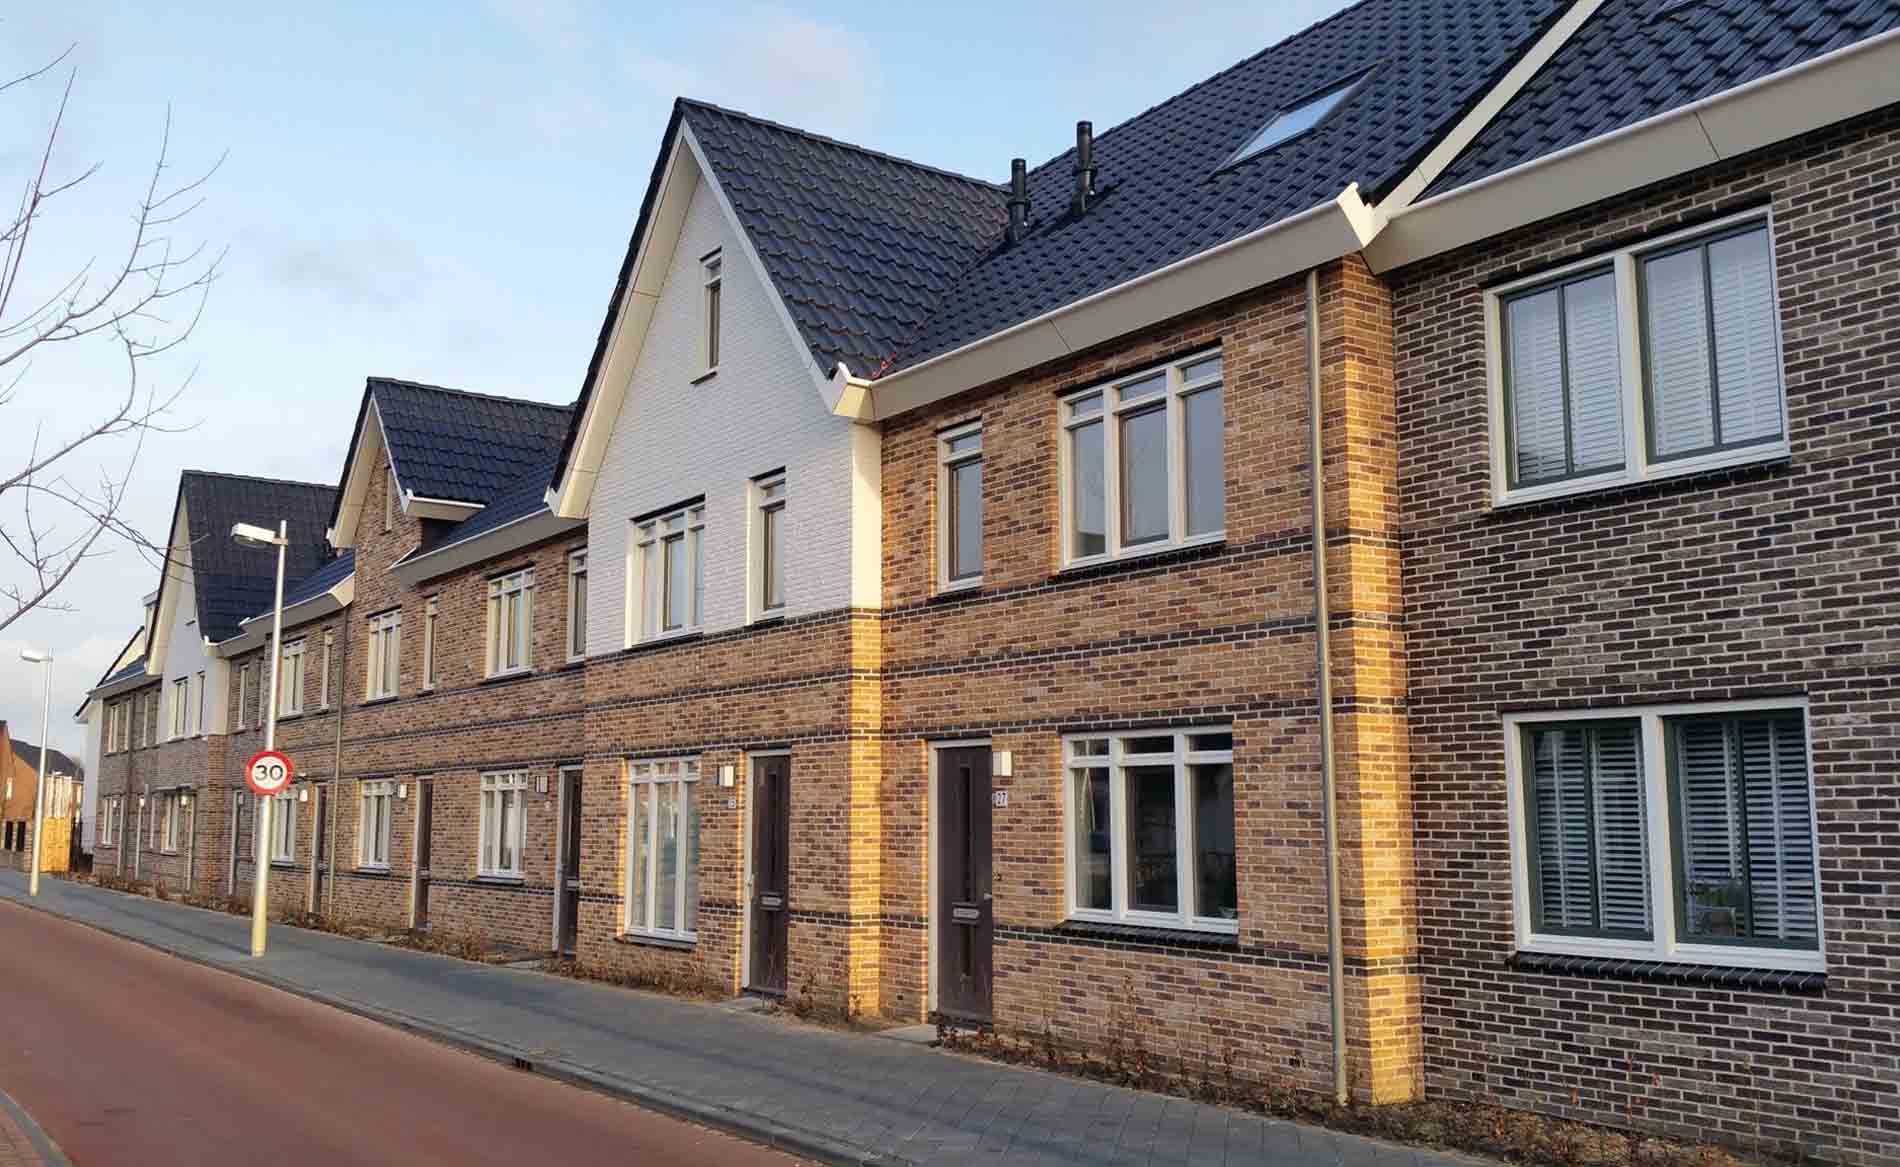 architect woningbouw woningen nieuwbouwwijk Hoge Weide Leidsche Rijn Utrecht BBHD architecten